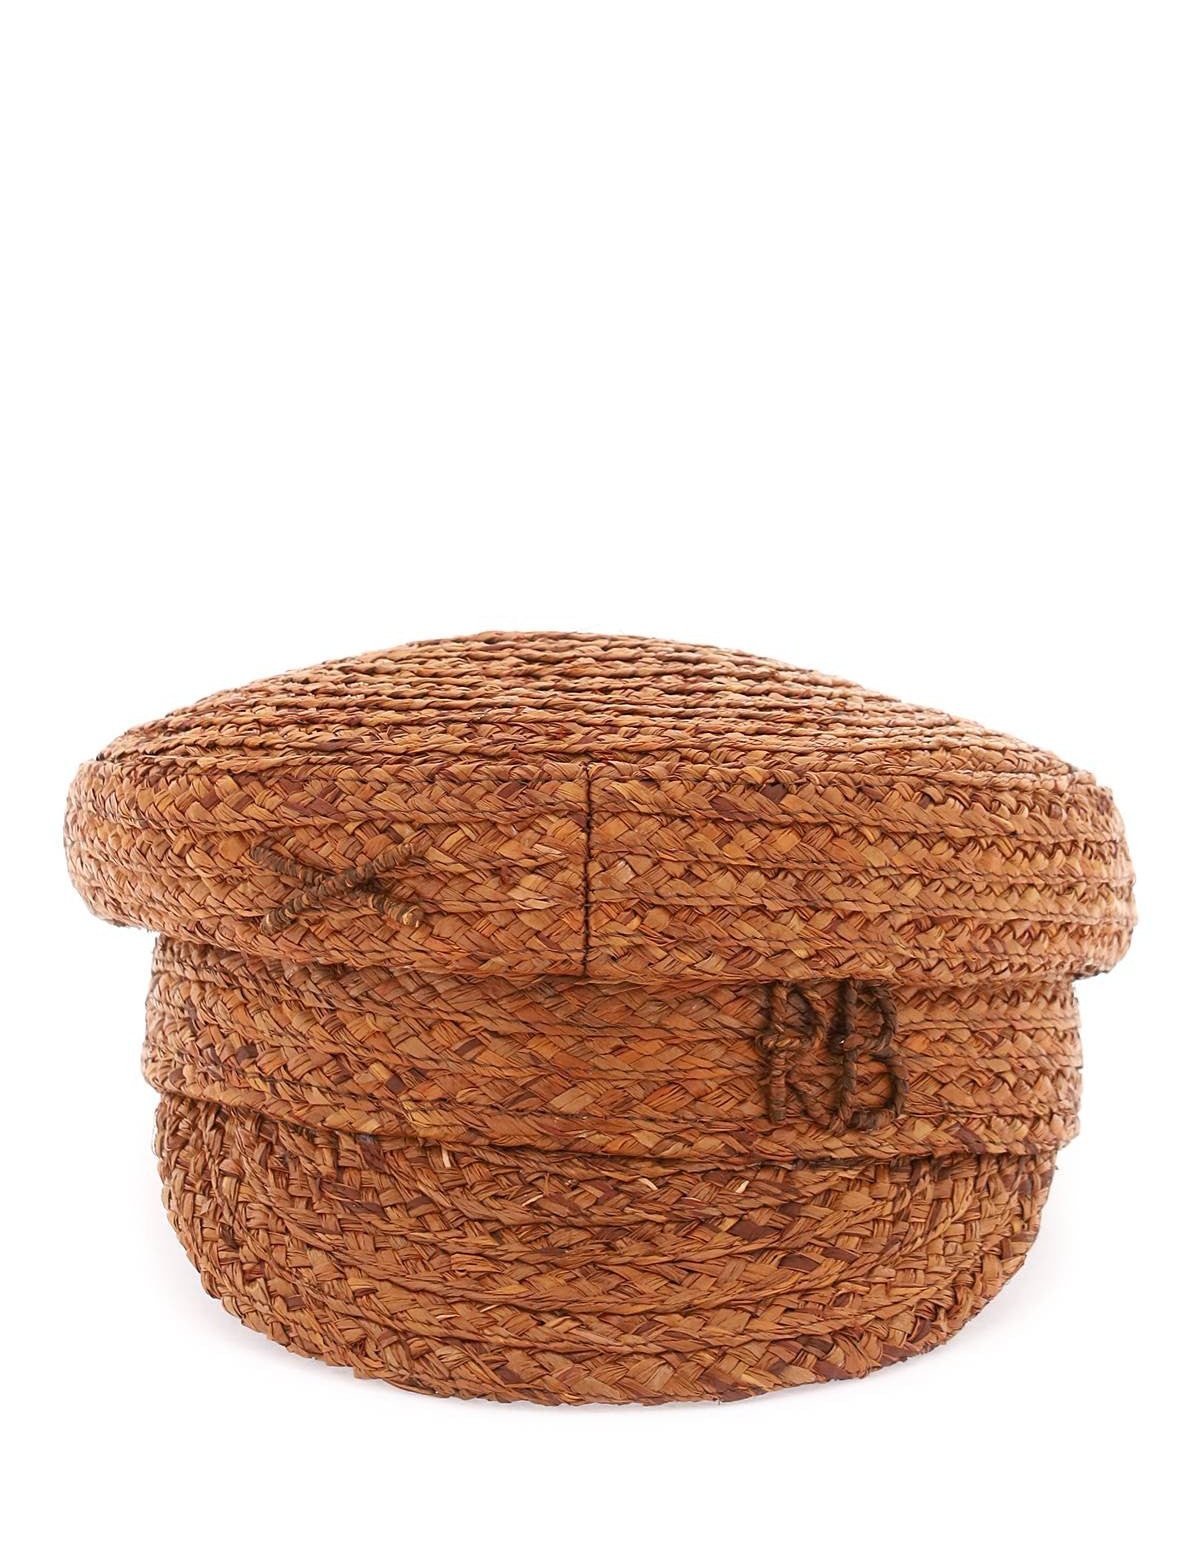 ruslan-baginskiy-raffia-baker-boy-hat-with-embroidery_0715739d-a863-4bd5-a118-623e62efd91c.jpg